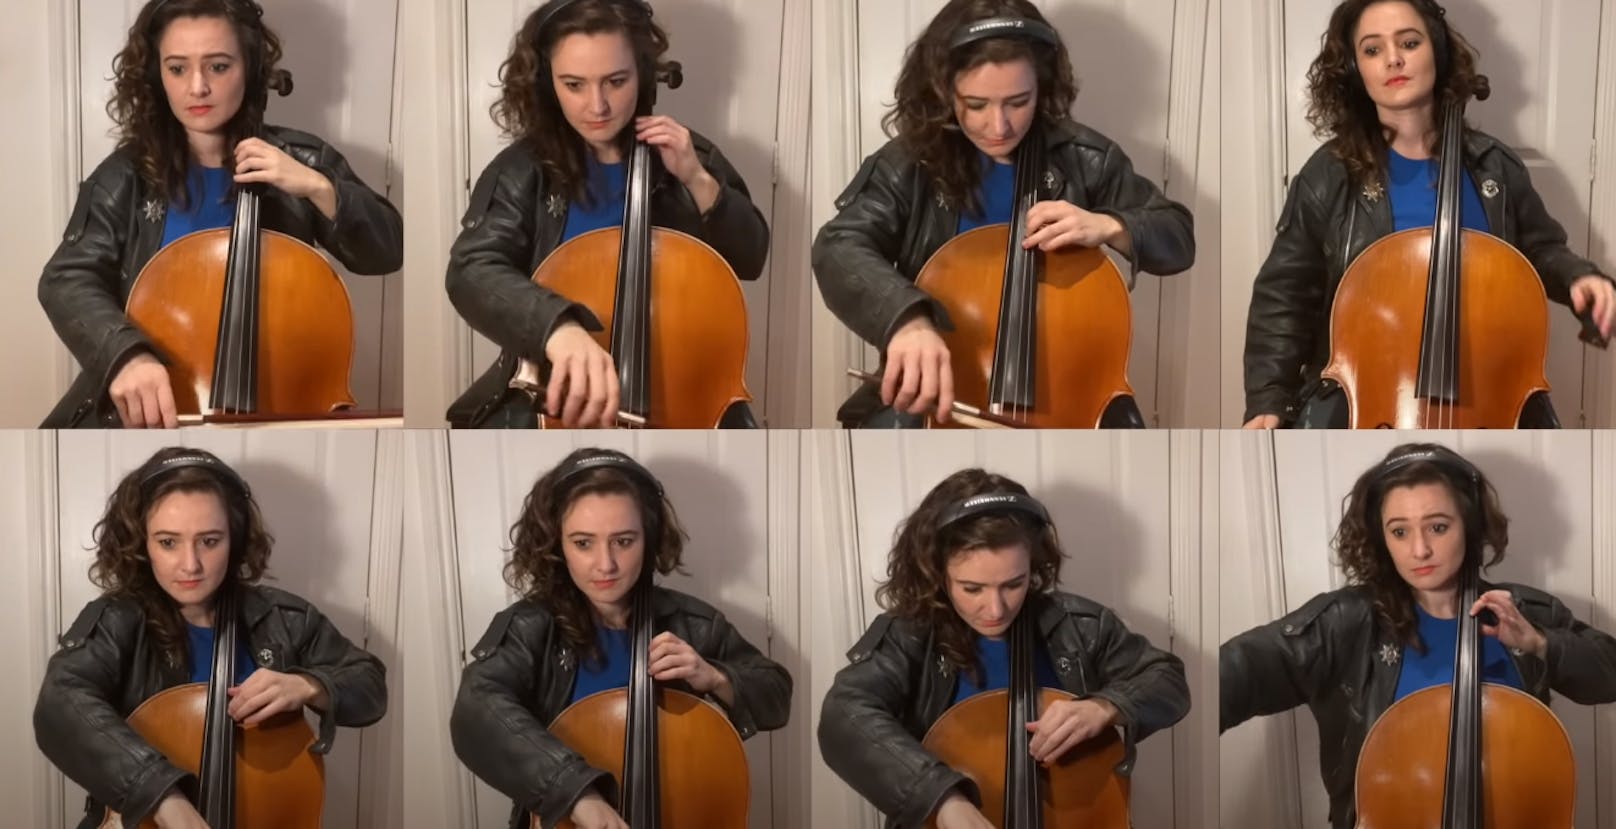 Cellistin SamaraGinsberg spielt die Knight-Rider-Melodie auf 8 Cellos.